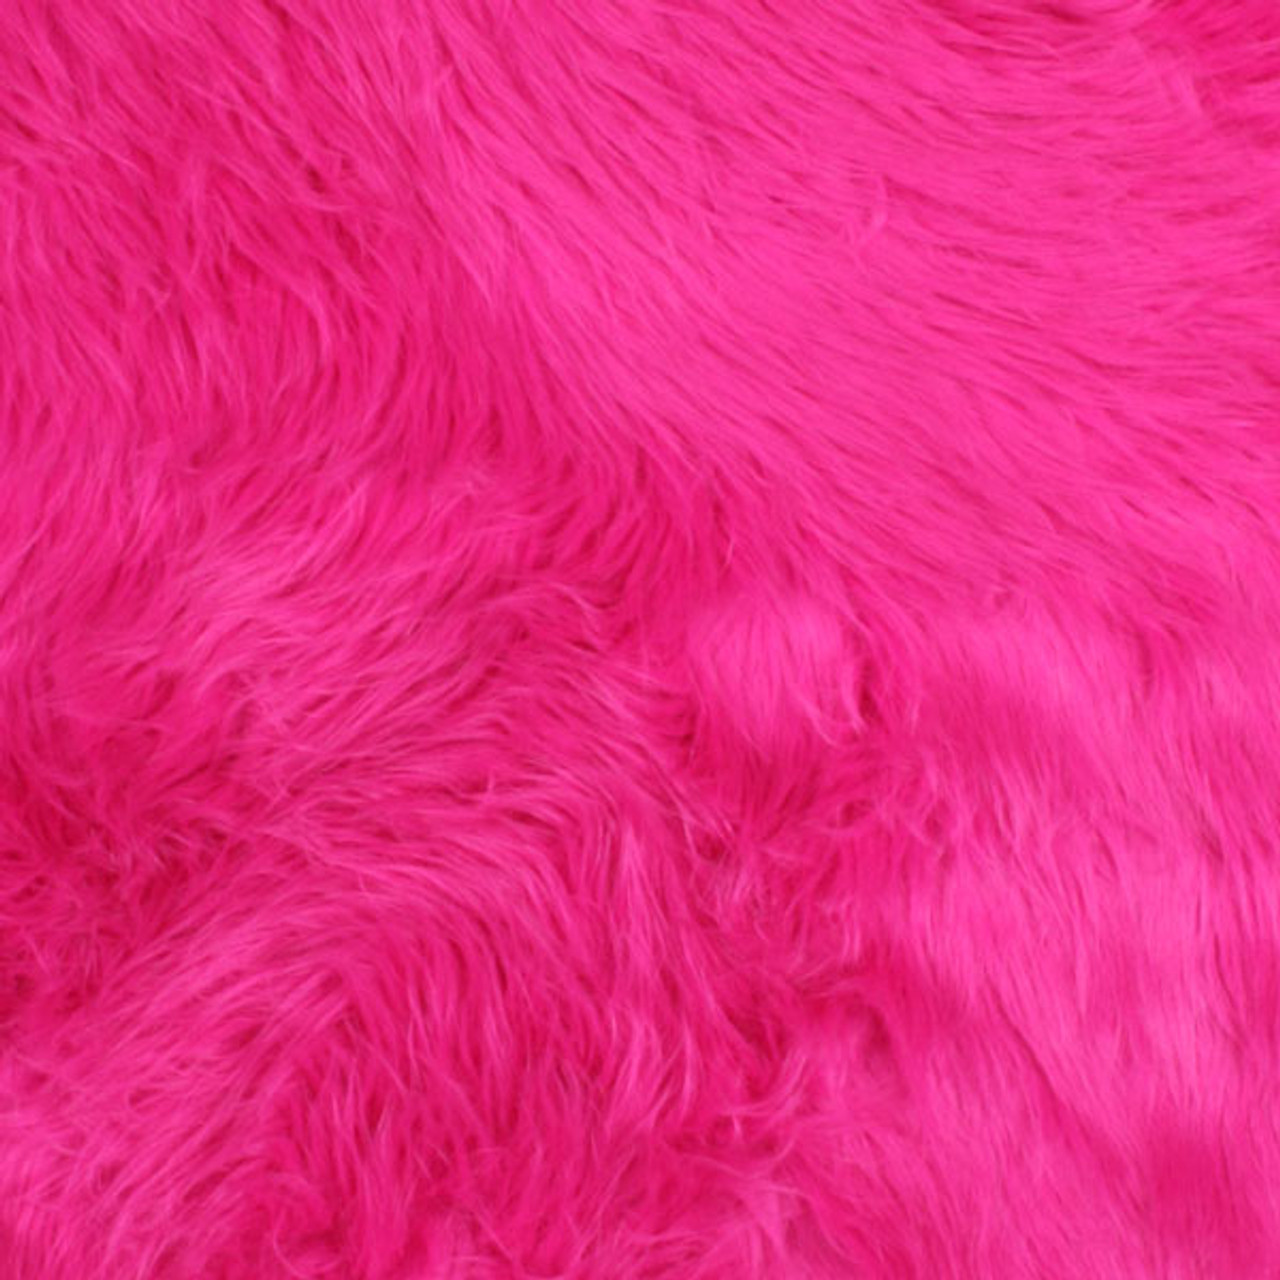 Cali Fabrics  Hot Pink Shag Faux Fur